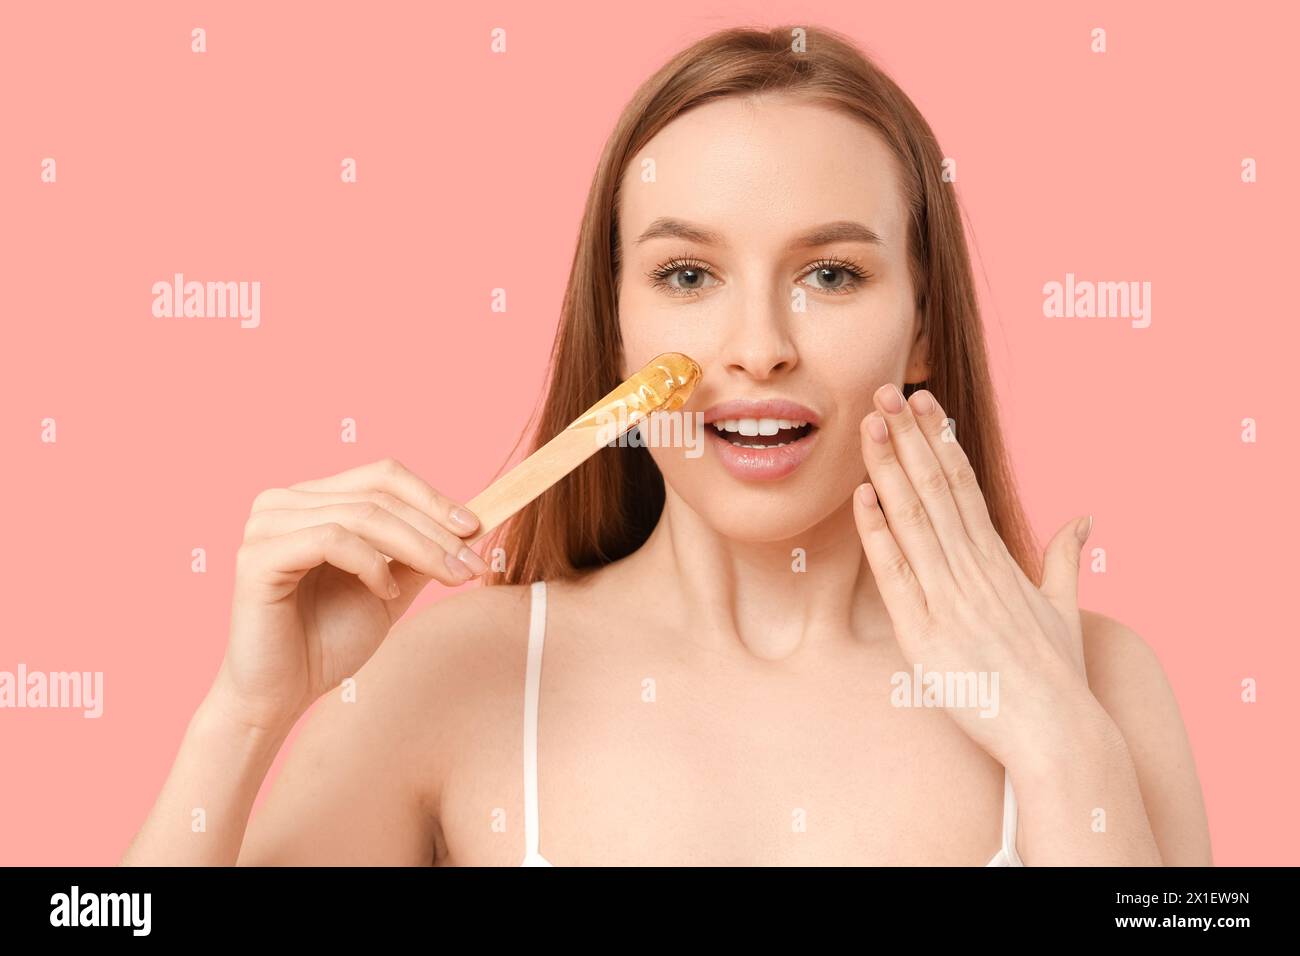 Schöne junge schockierte Frau, die Spachtel mit Zuckerpaste auf rosa Hintergrund hält Stockfoto